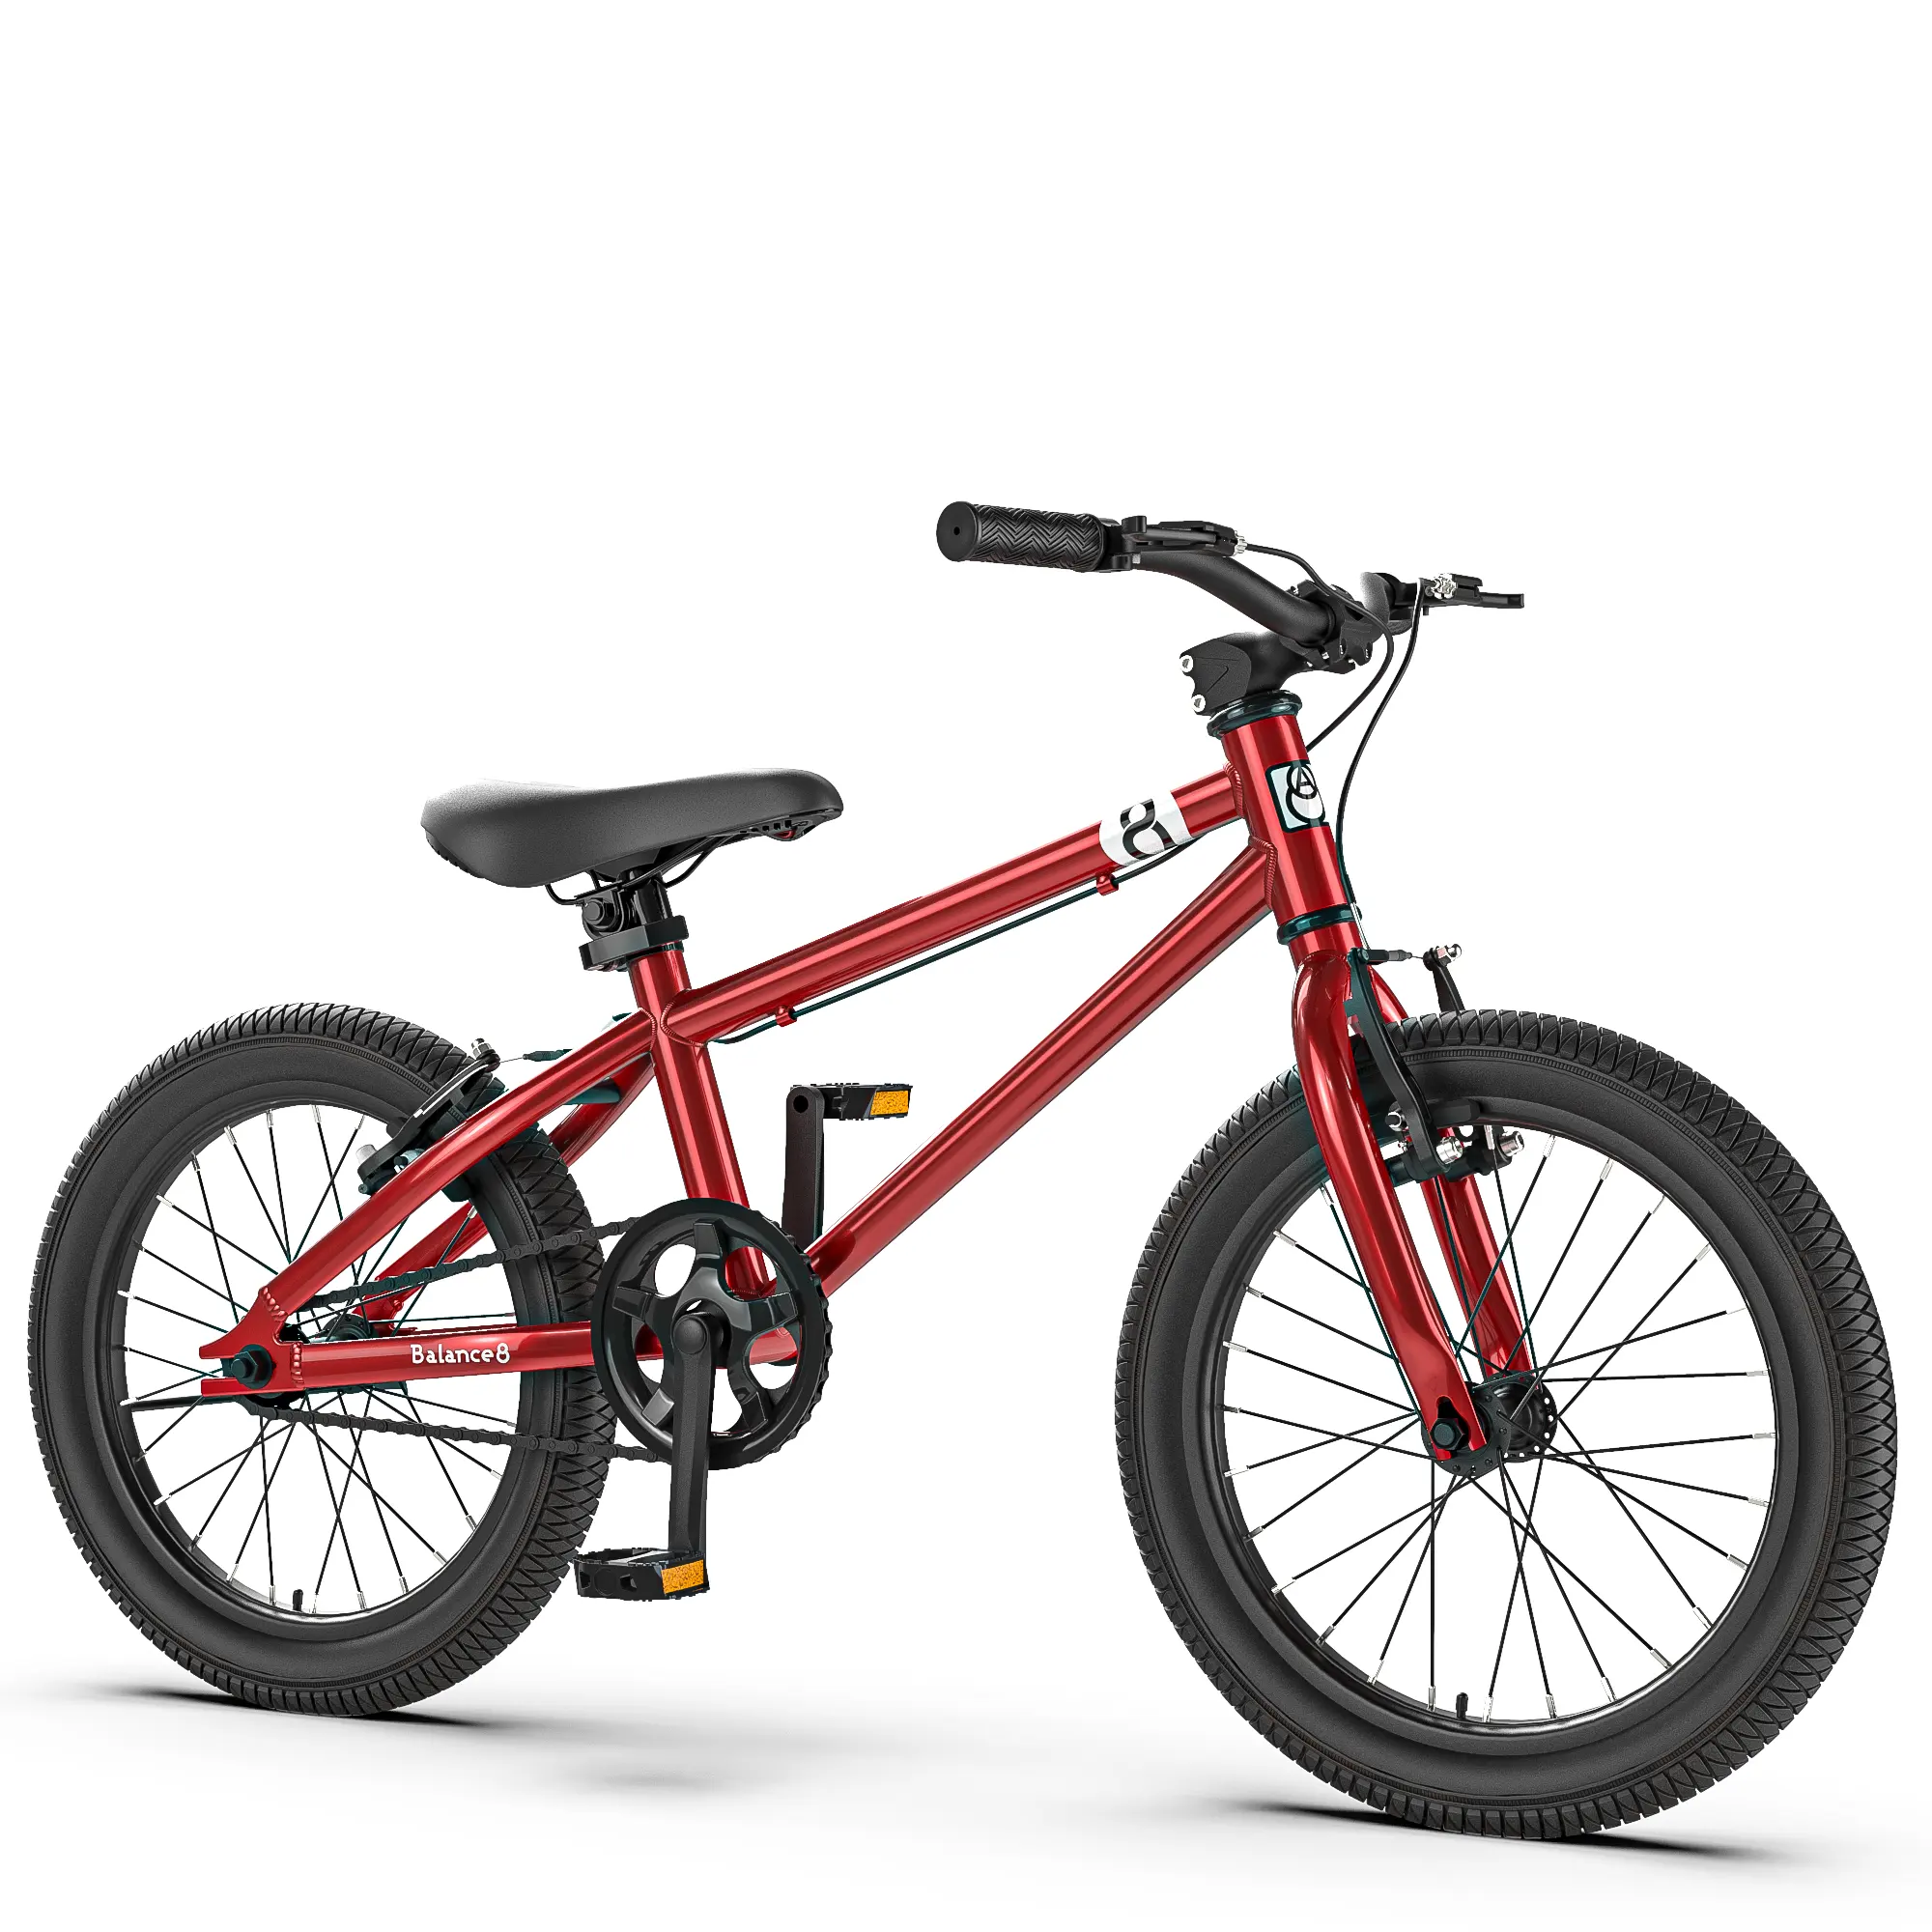 अच्छी गुणवत्ता सस्ता 24 इंच bmx बाइक के लिए बिक्री/20 इंच मिनी bmx फ्रीस्टाइल साइकिल/OEM 26 इंच सभी प्रकार की कीमत bmx साइकिल